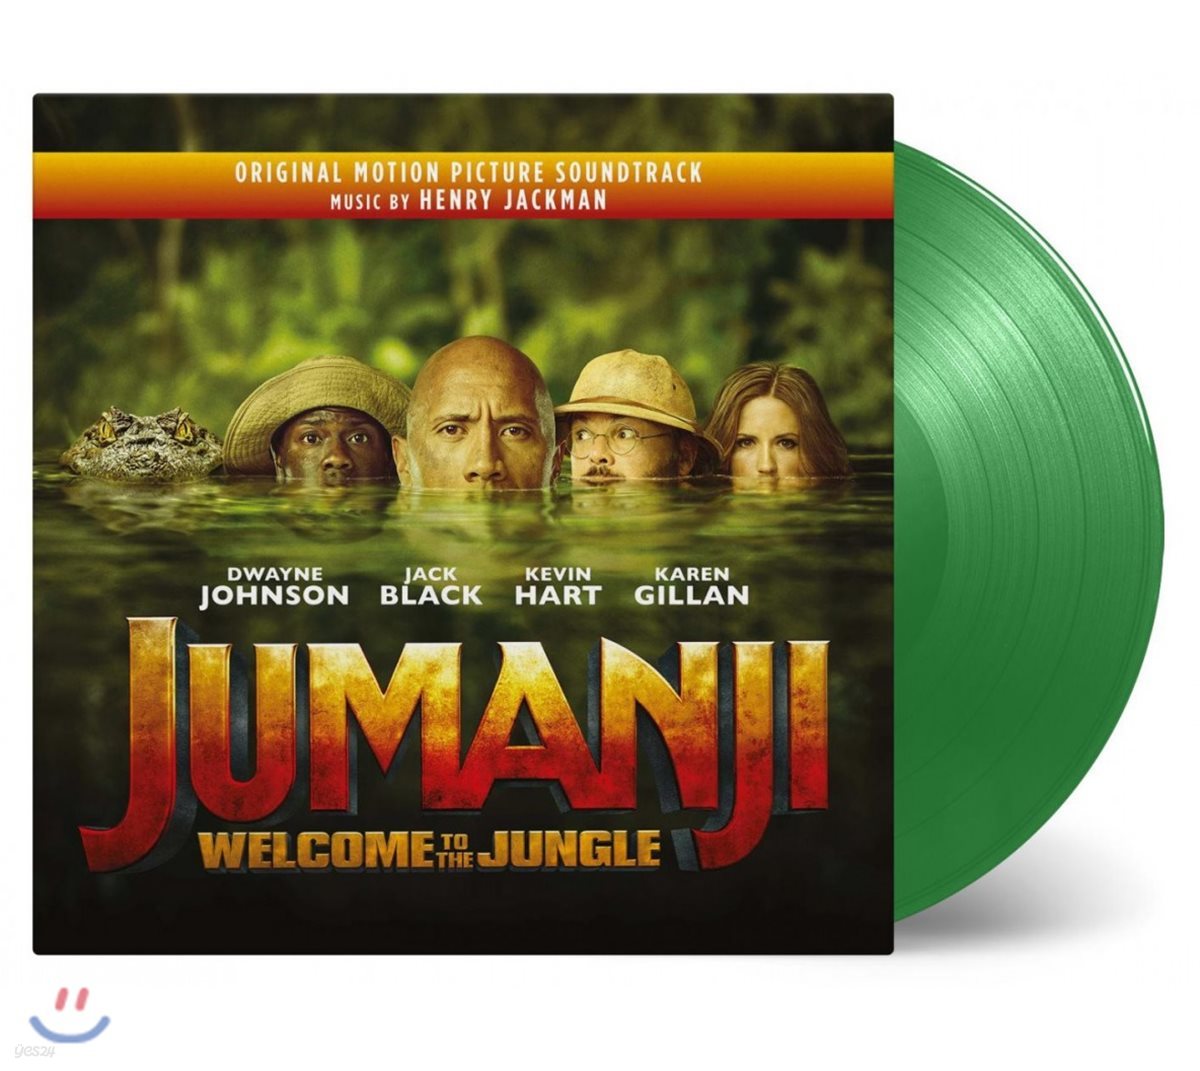 쥬만지: 새로운 세계 영화음악 (Jumanji Welcome To The Jungle OST by Henry Jackman 헨리 잭맨) [그린 컬러 2LP]